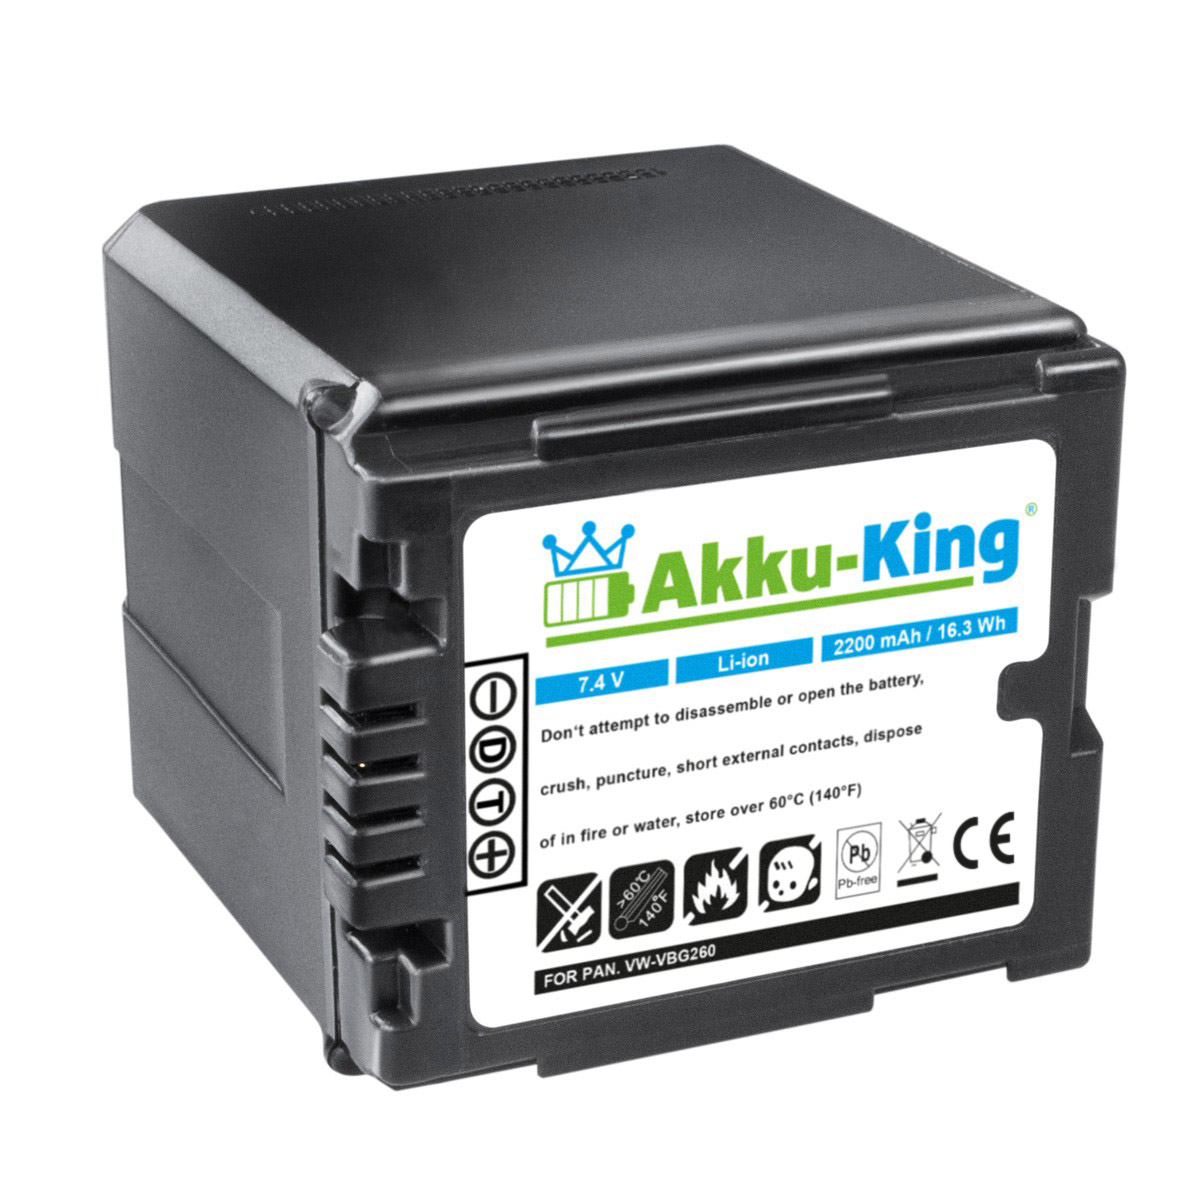 AKKU-KING Akku Panasonic Li-Ion kompatibel 2200mAh Kamera-Akku, VW-VBG260 mit Volt, 7.4